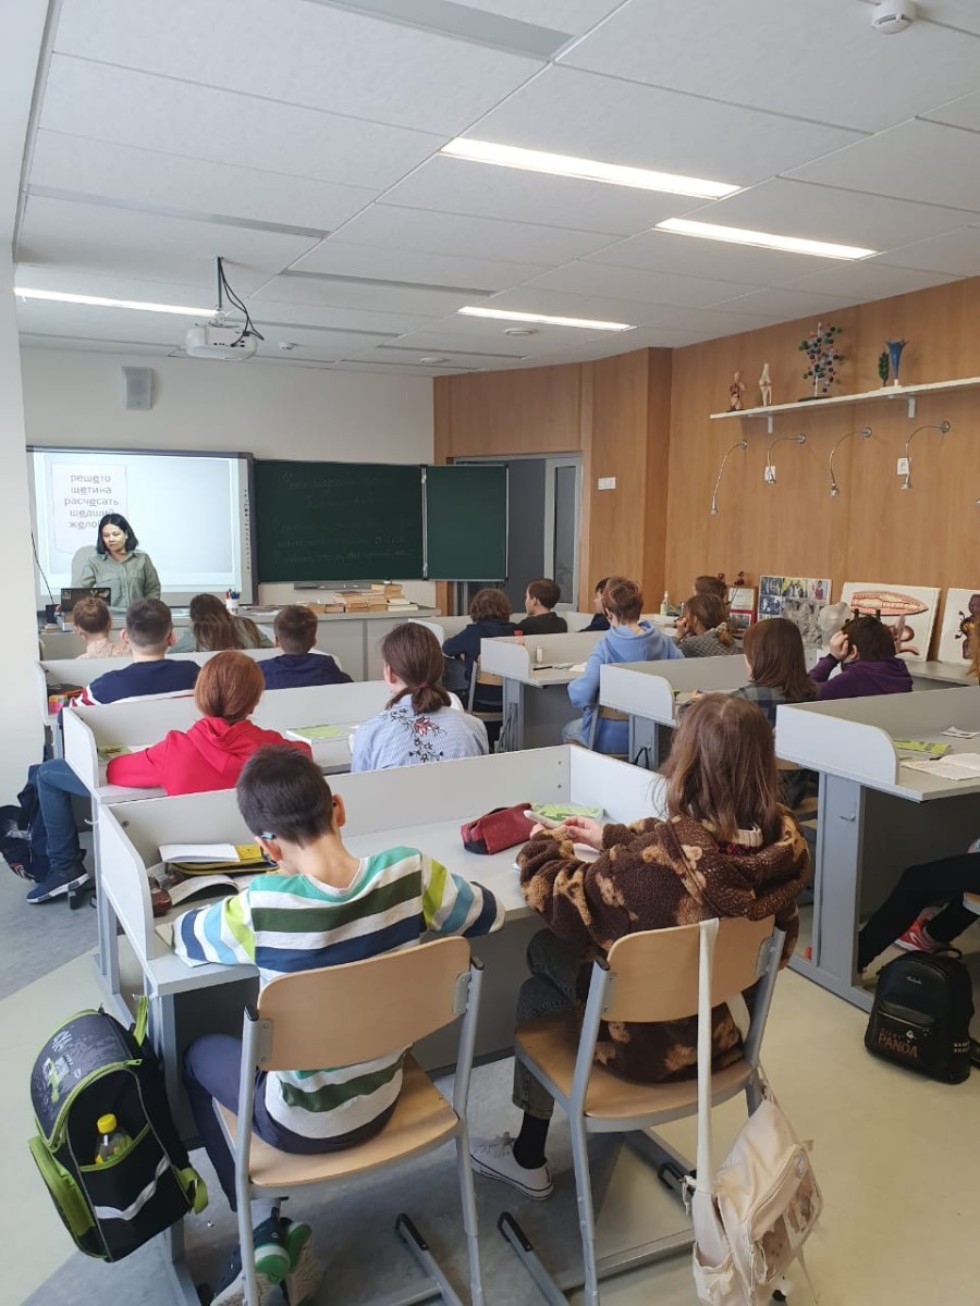 Студенты-туркмены 4 курса ИФМК делятся впечатлениями о педагогической практике по русскому языку